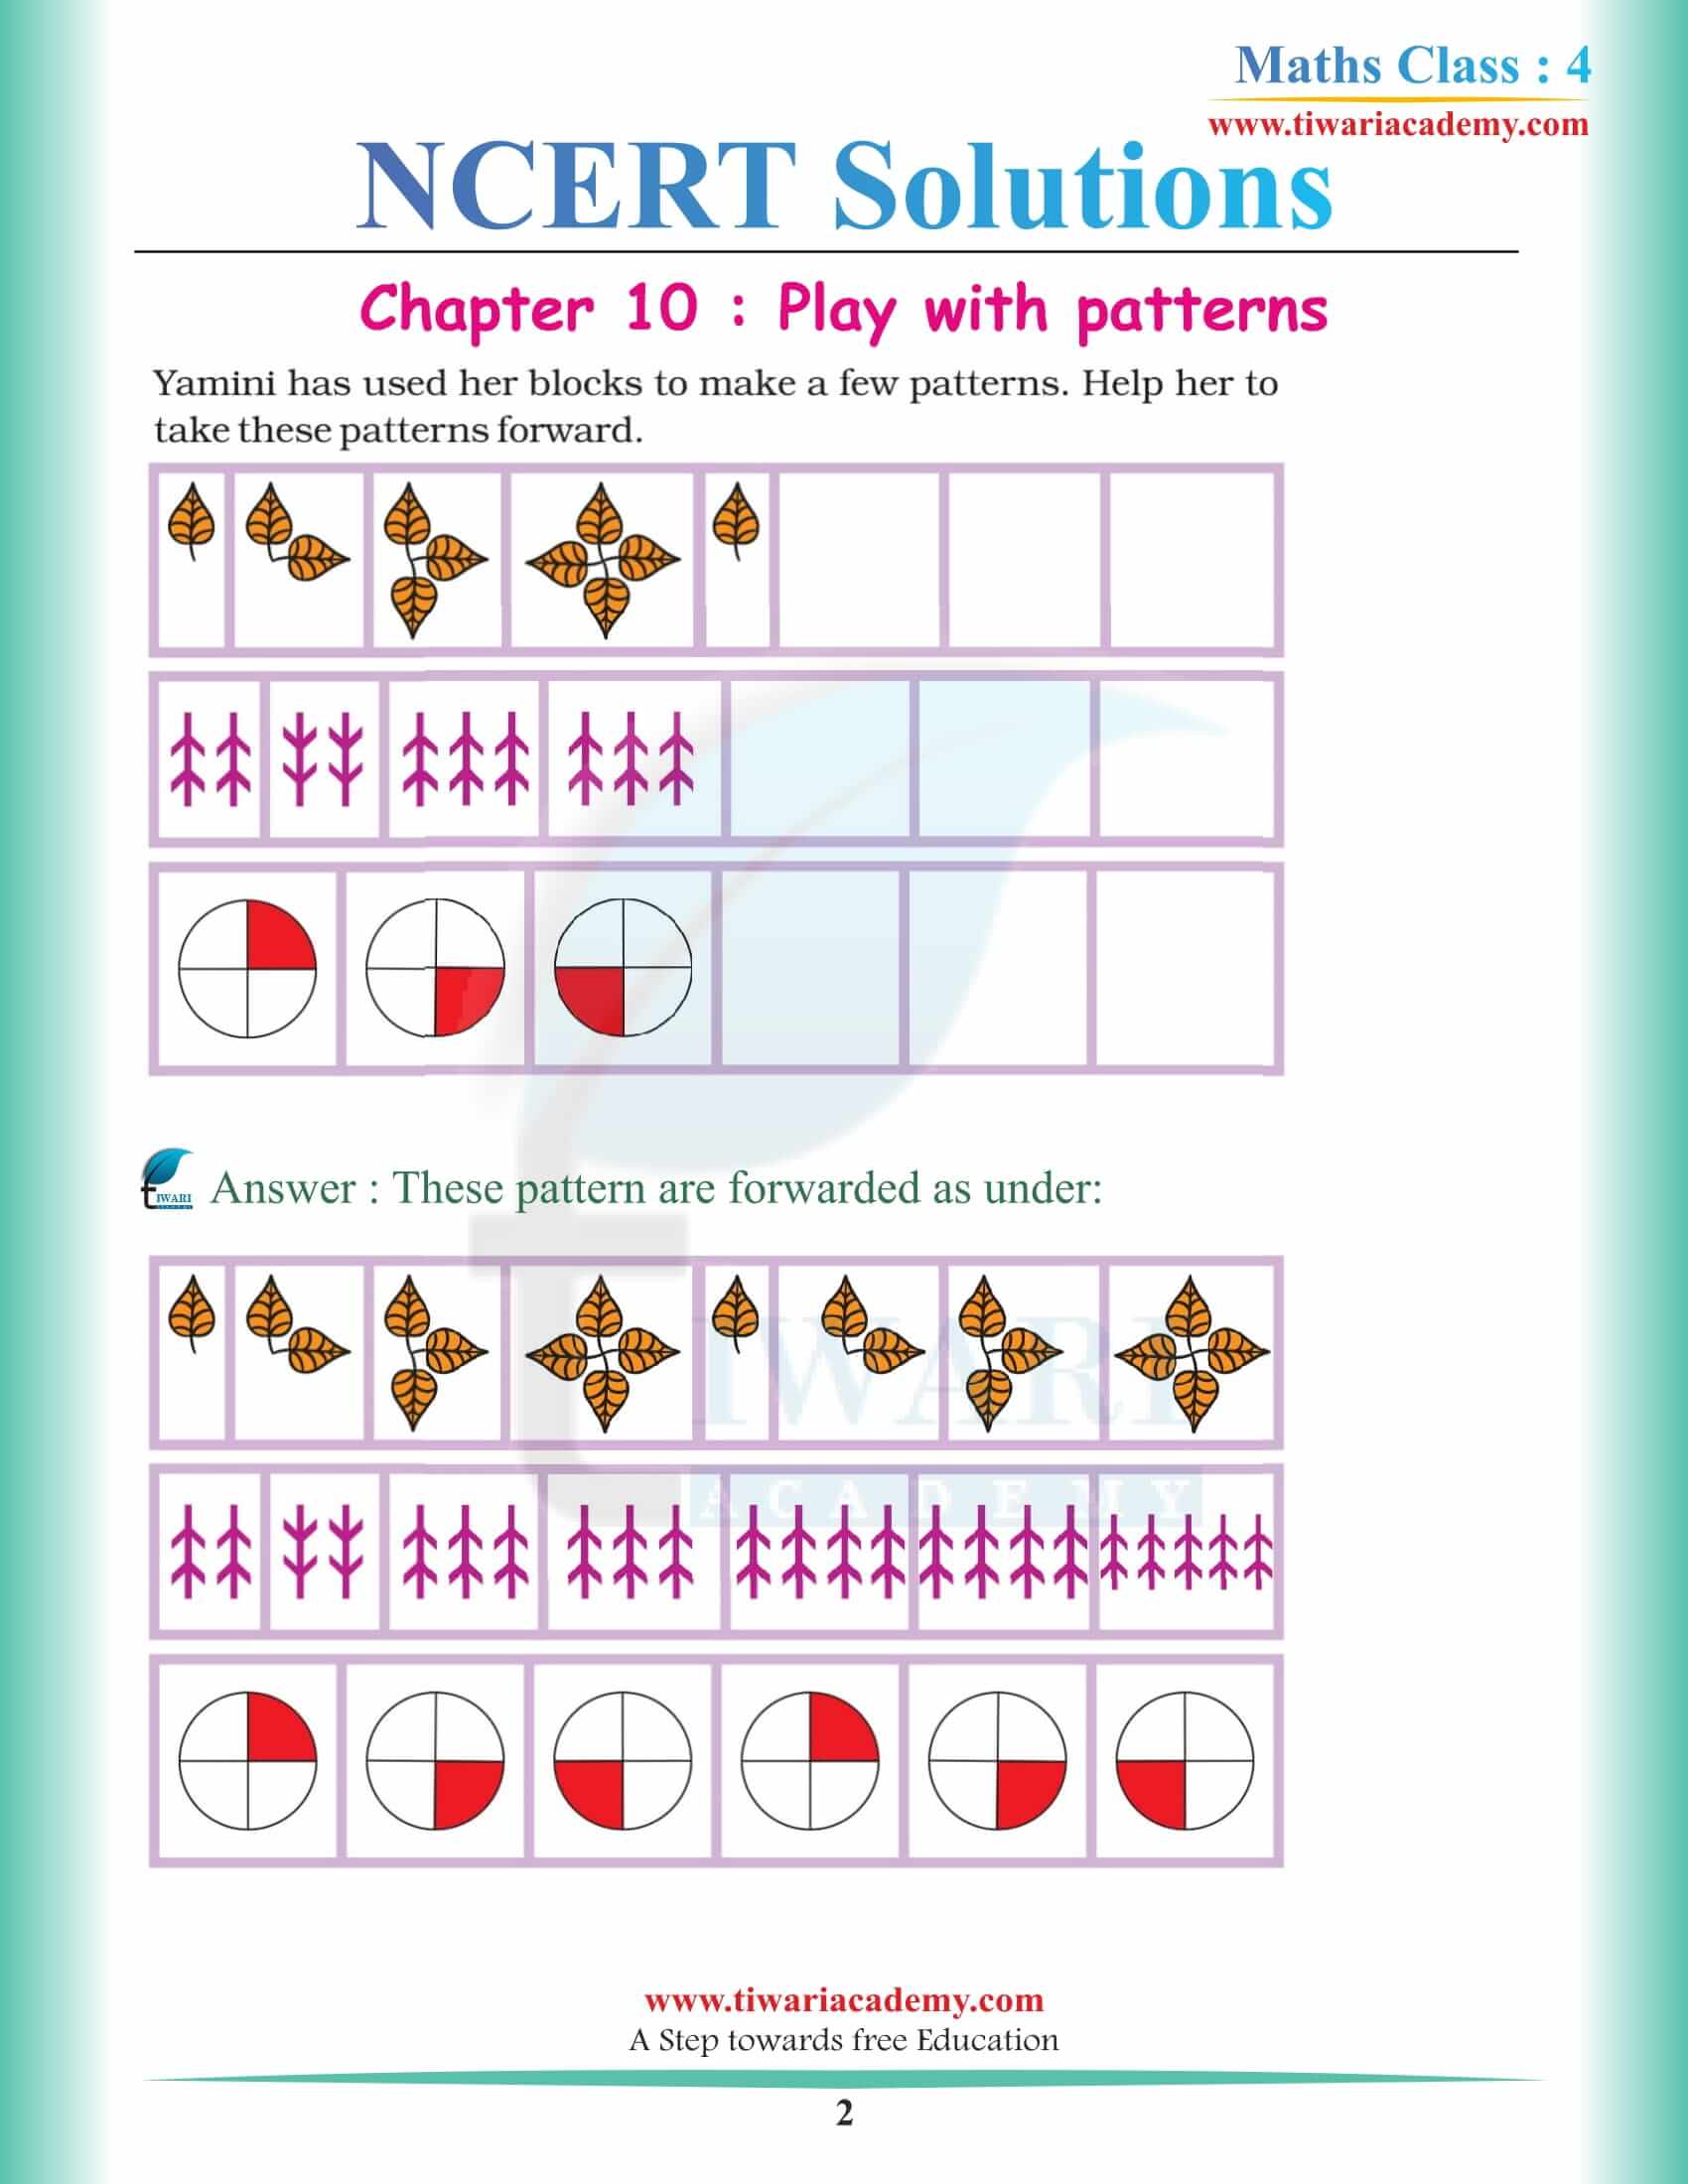 NCERT Solutions for Class 4 Maths Chapter 10